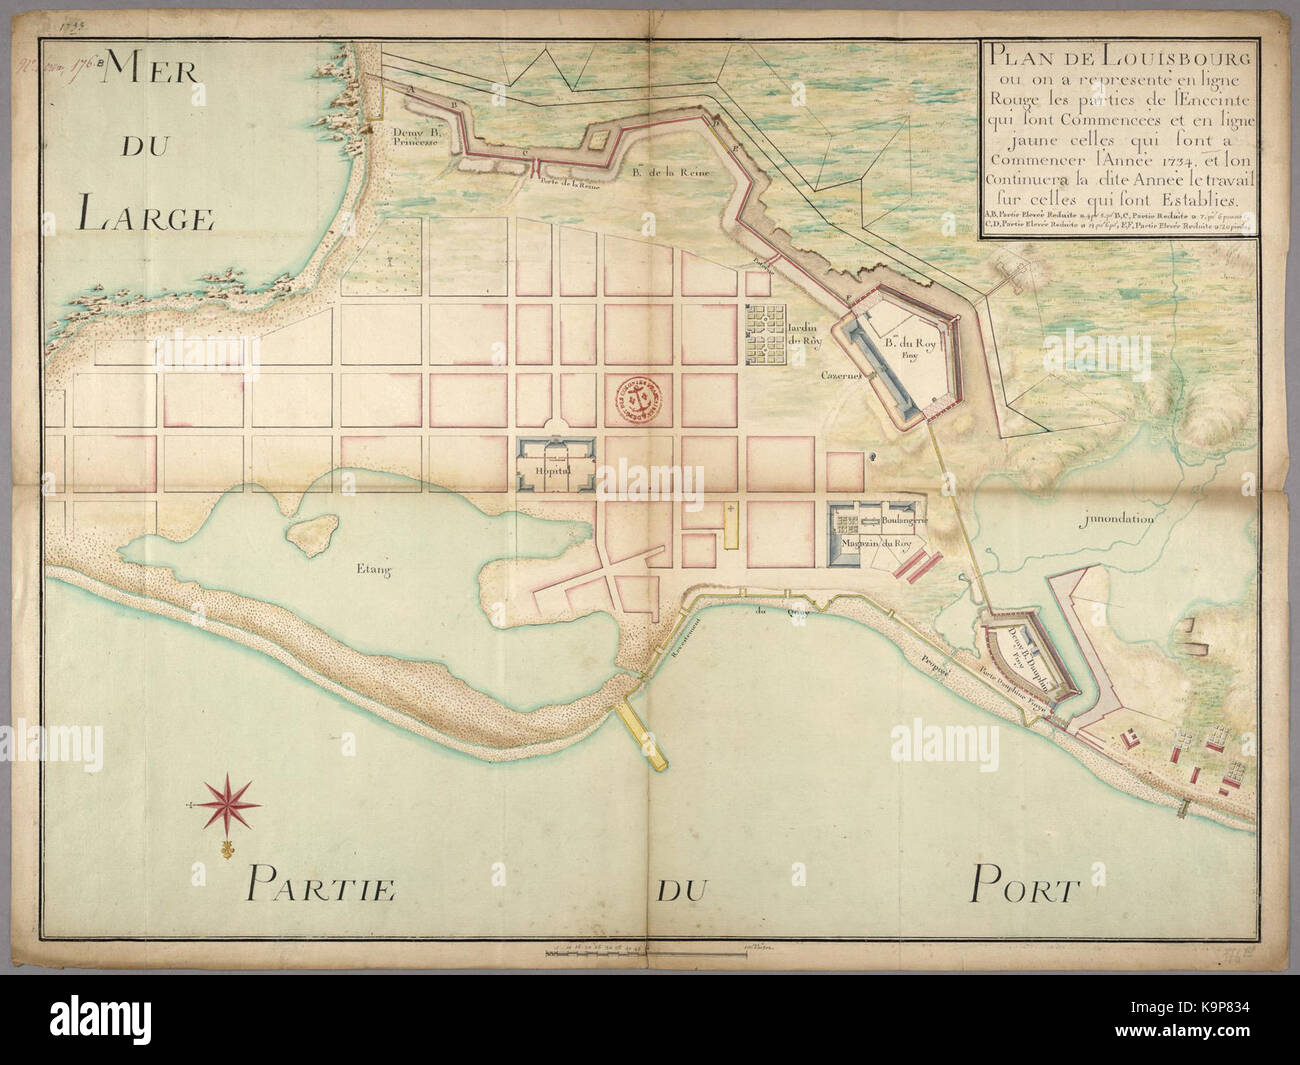 Plan de Louisbourg ou su un represente en ligne rouge les parti de l enceinte qui sont commencees et en ligne jaune celles qui sont un commencer l annee 1734 Foto Stock